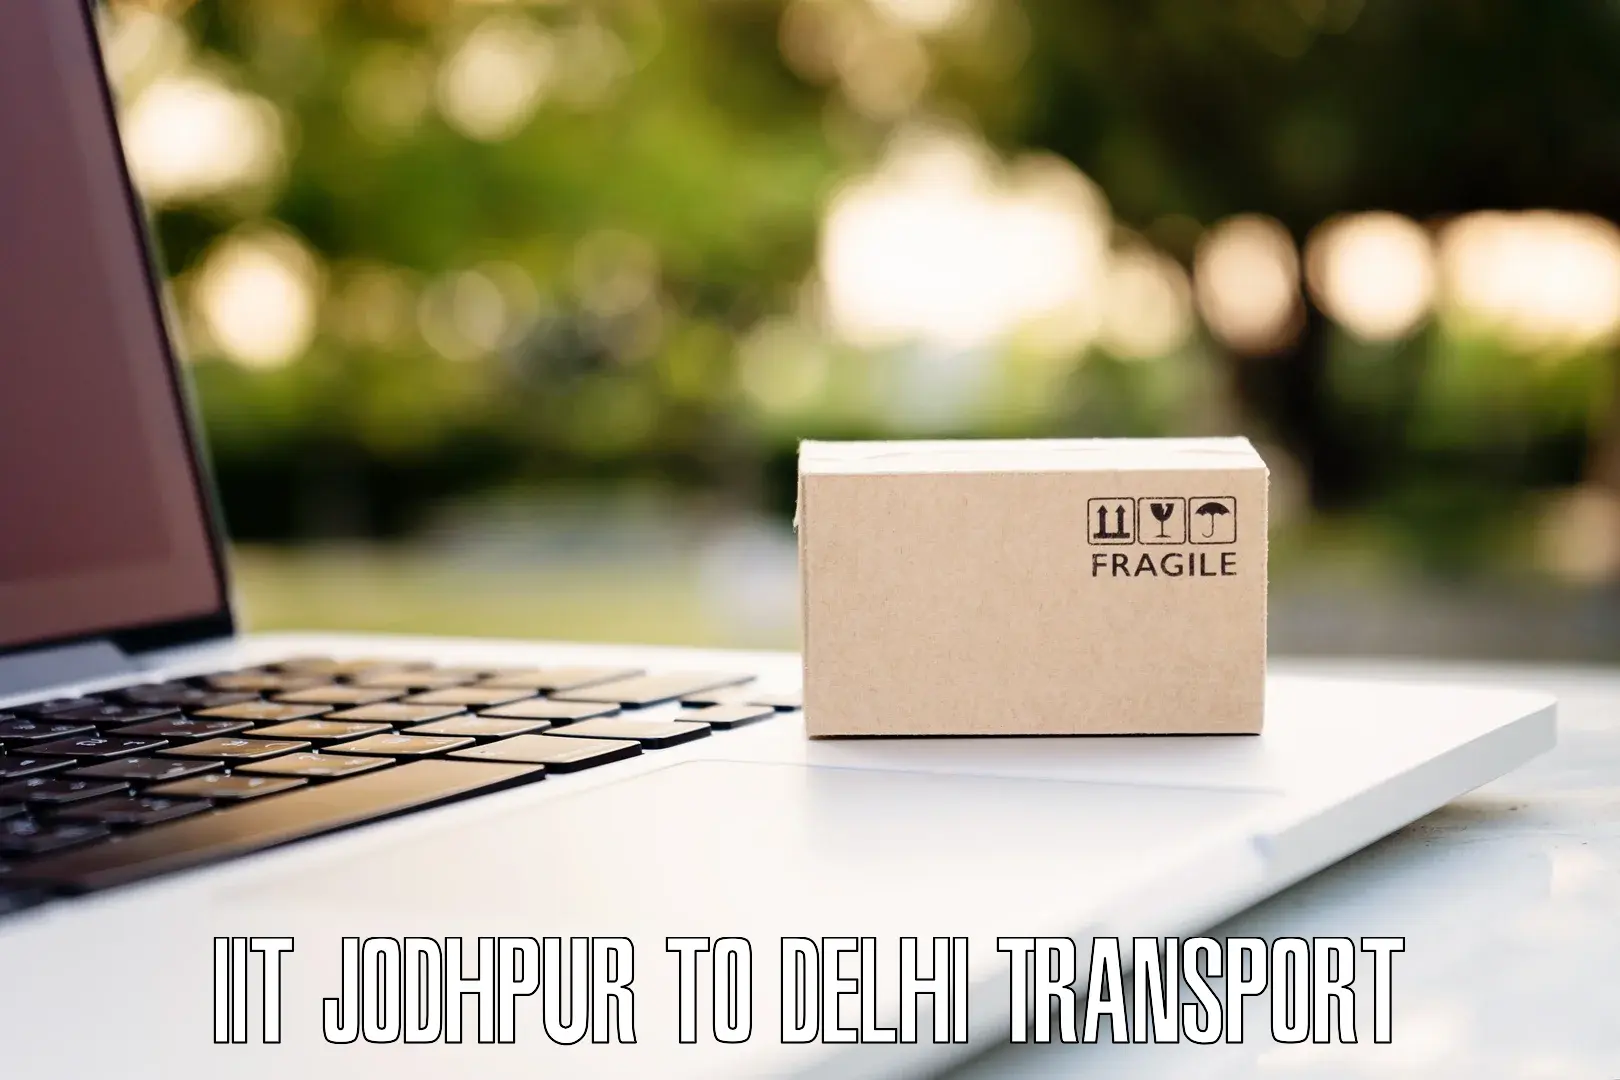 Lorry transport service in IIT Jodhpur to Jhilmil